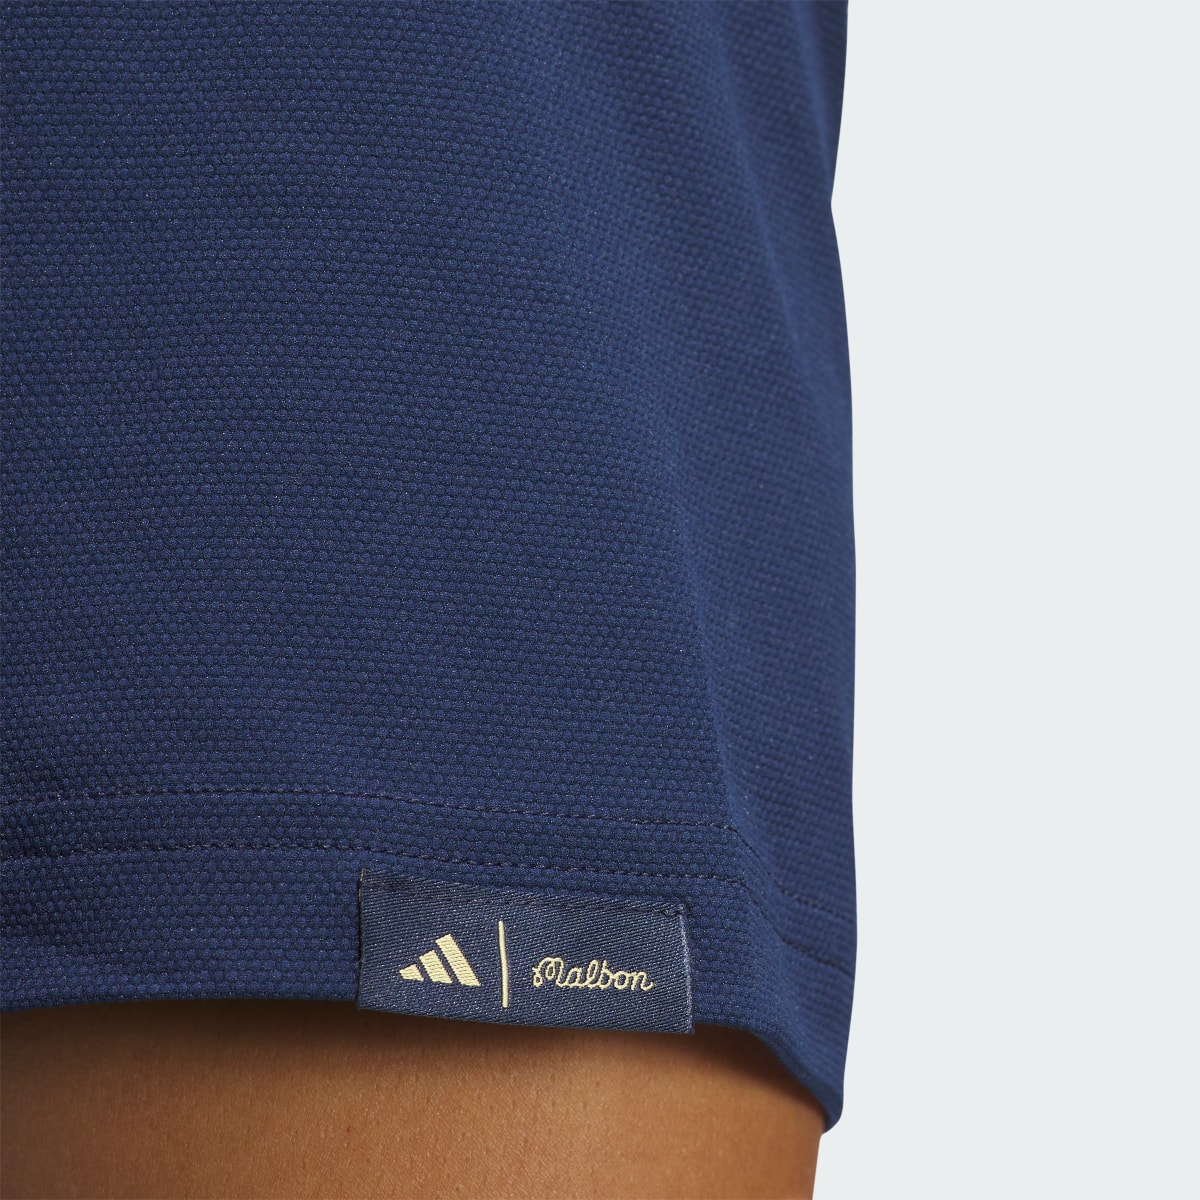 Adidas Koszulka Malbon Polo. 9